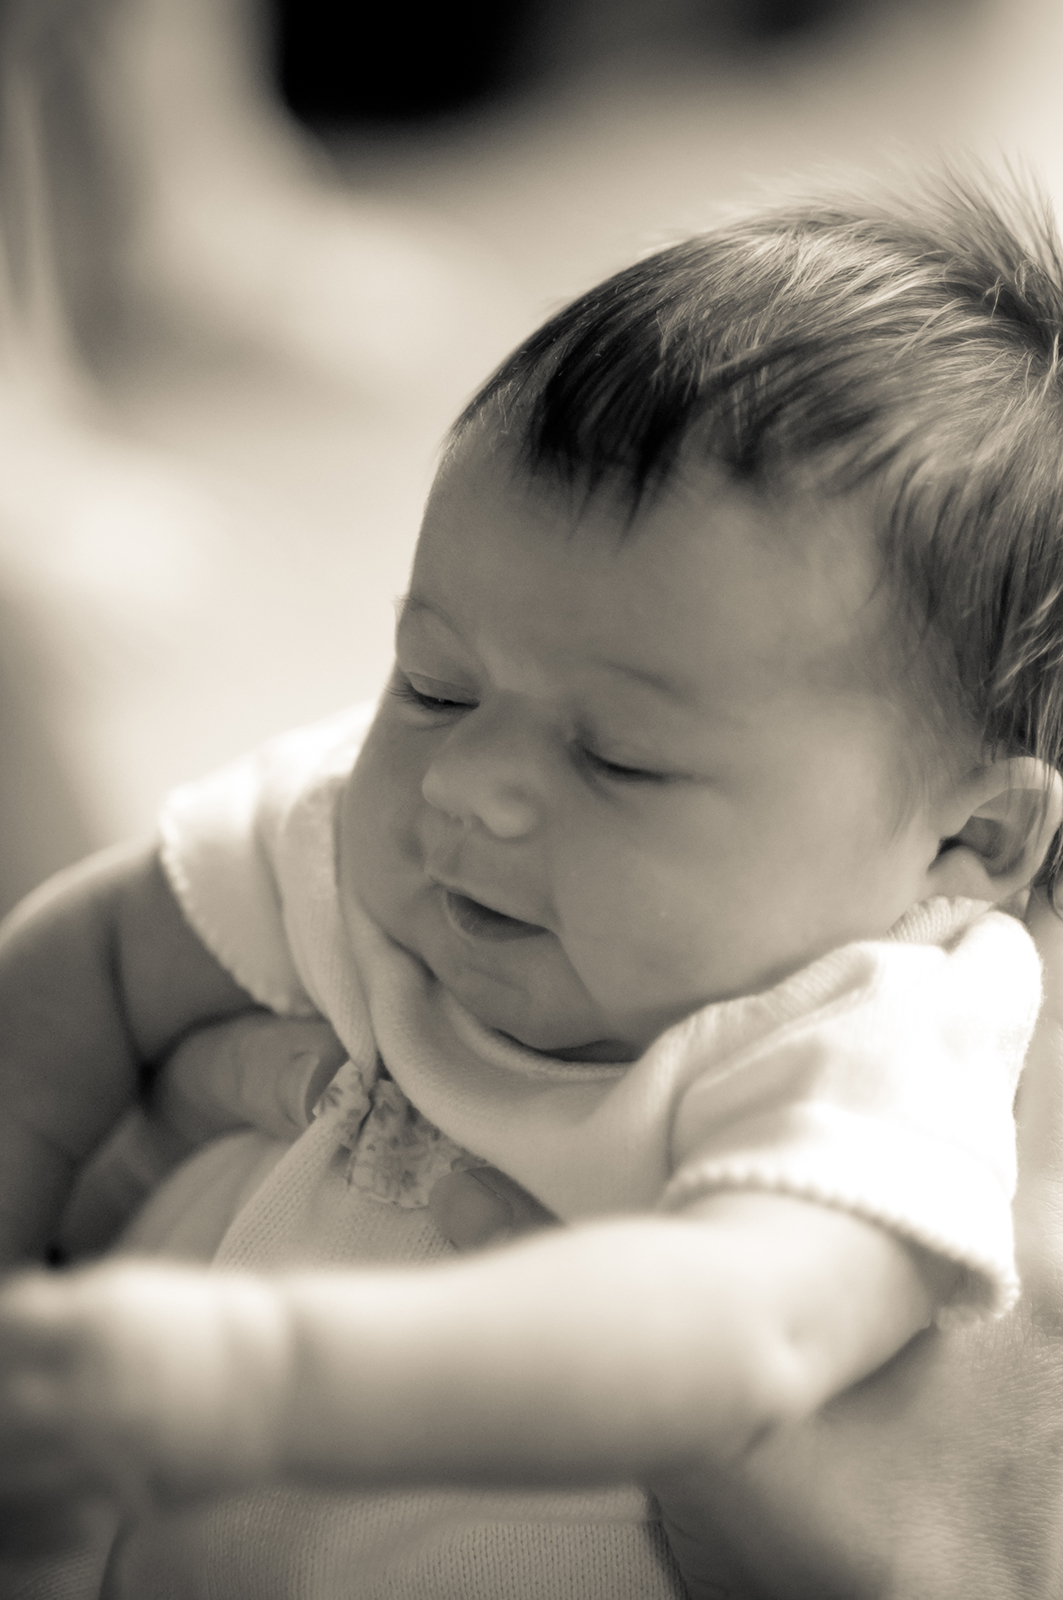 [Newborn baby] Photo by Melissa Austin.